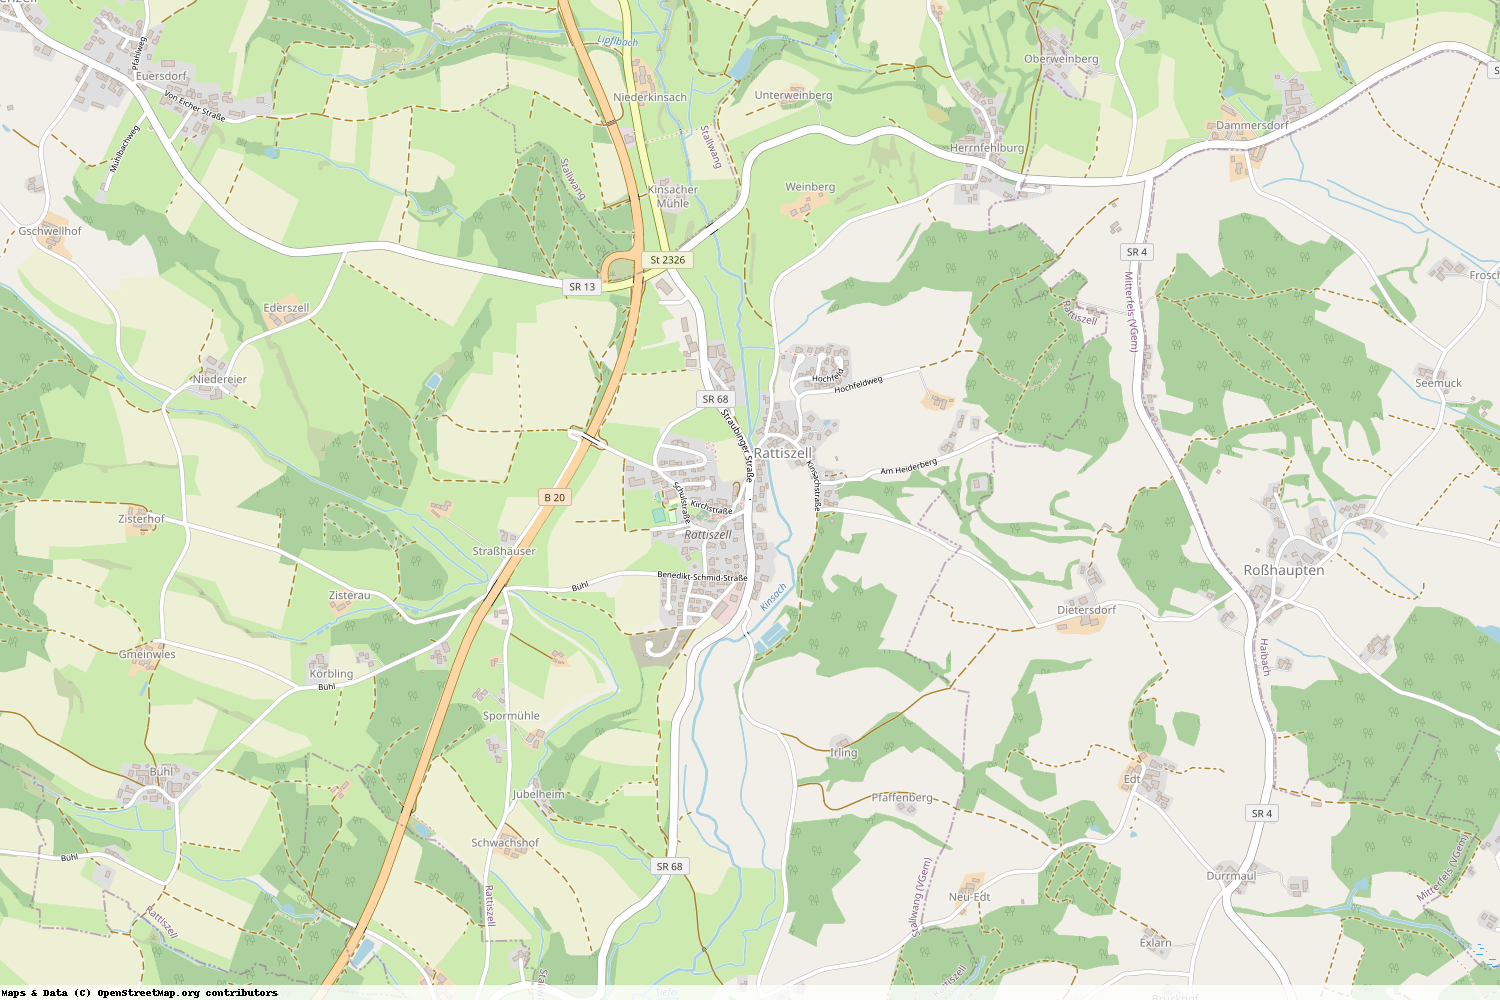 Ist gerade Stromausfall in Bayern - Straubing-Bogen - Rattiszell?